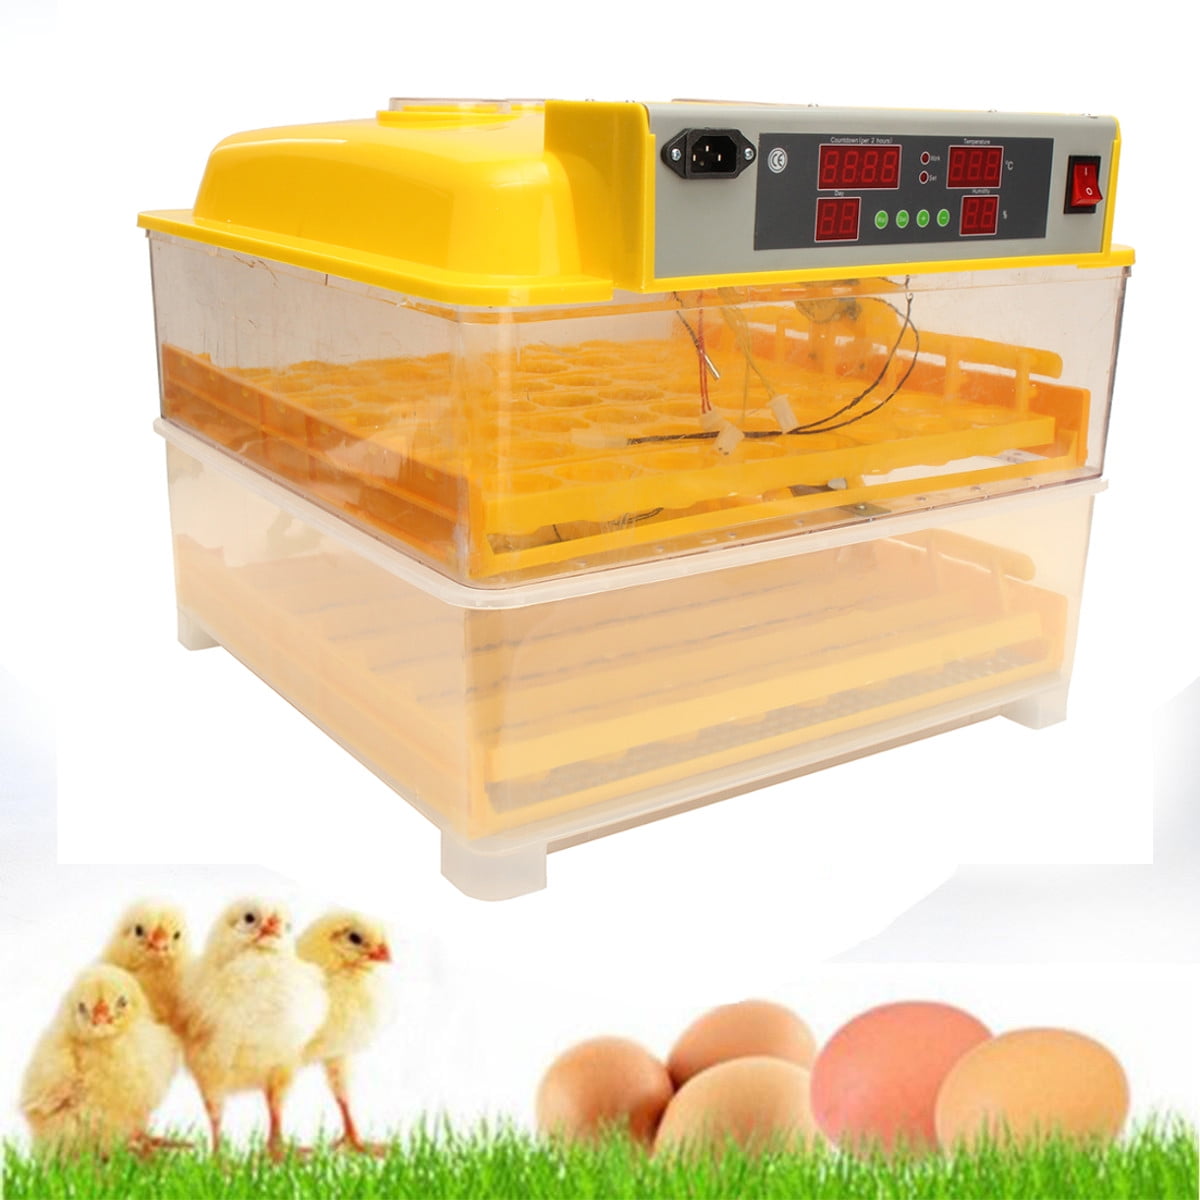 fully automatic egg incubator canada